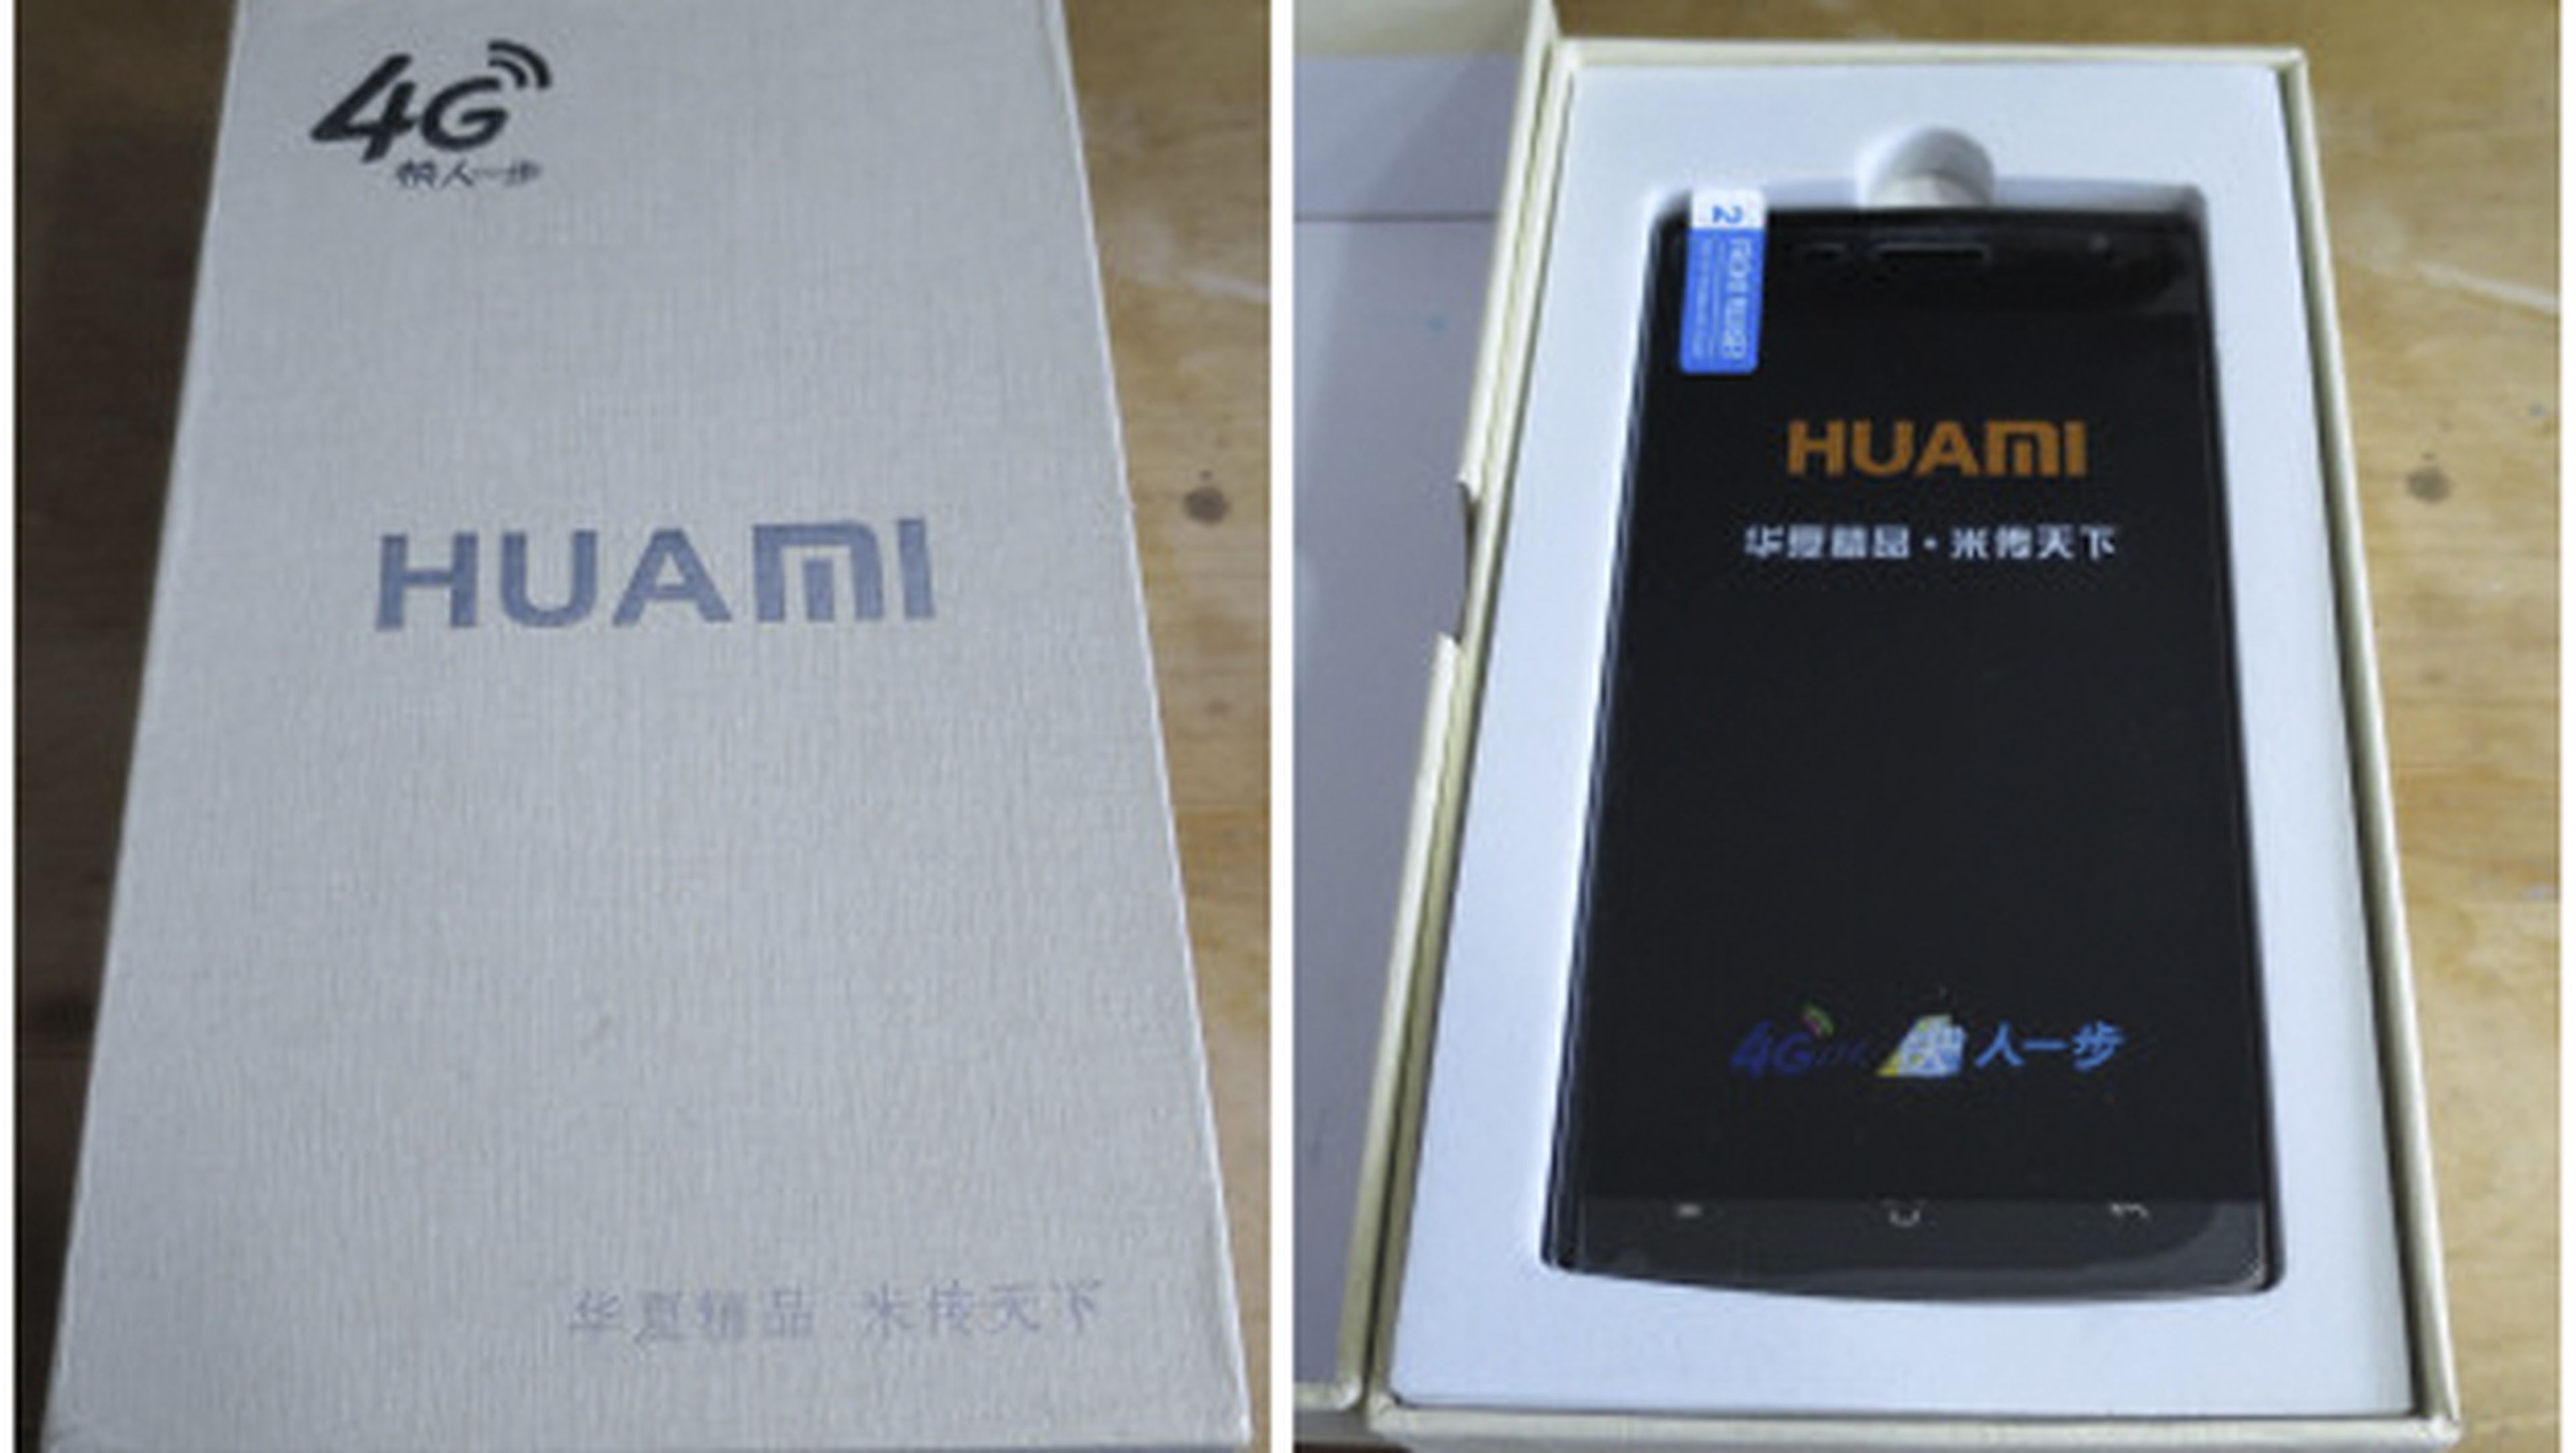 El curioso caso del smartphone chino Android por 34 dólares